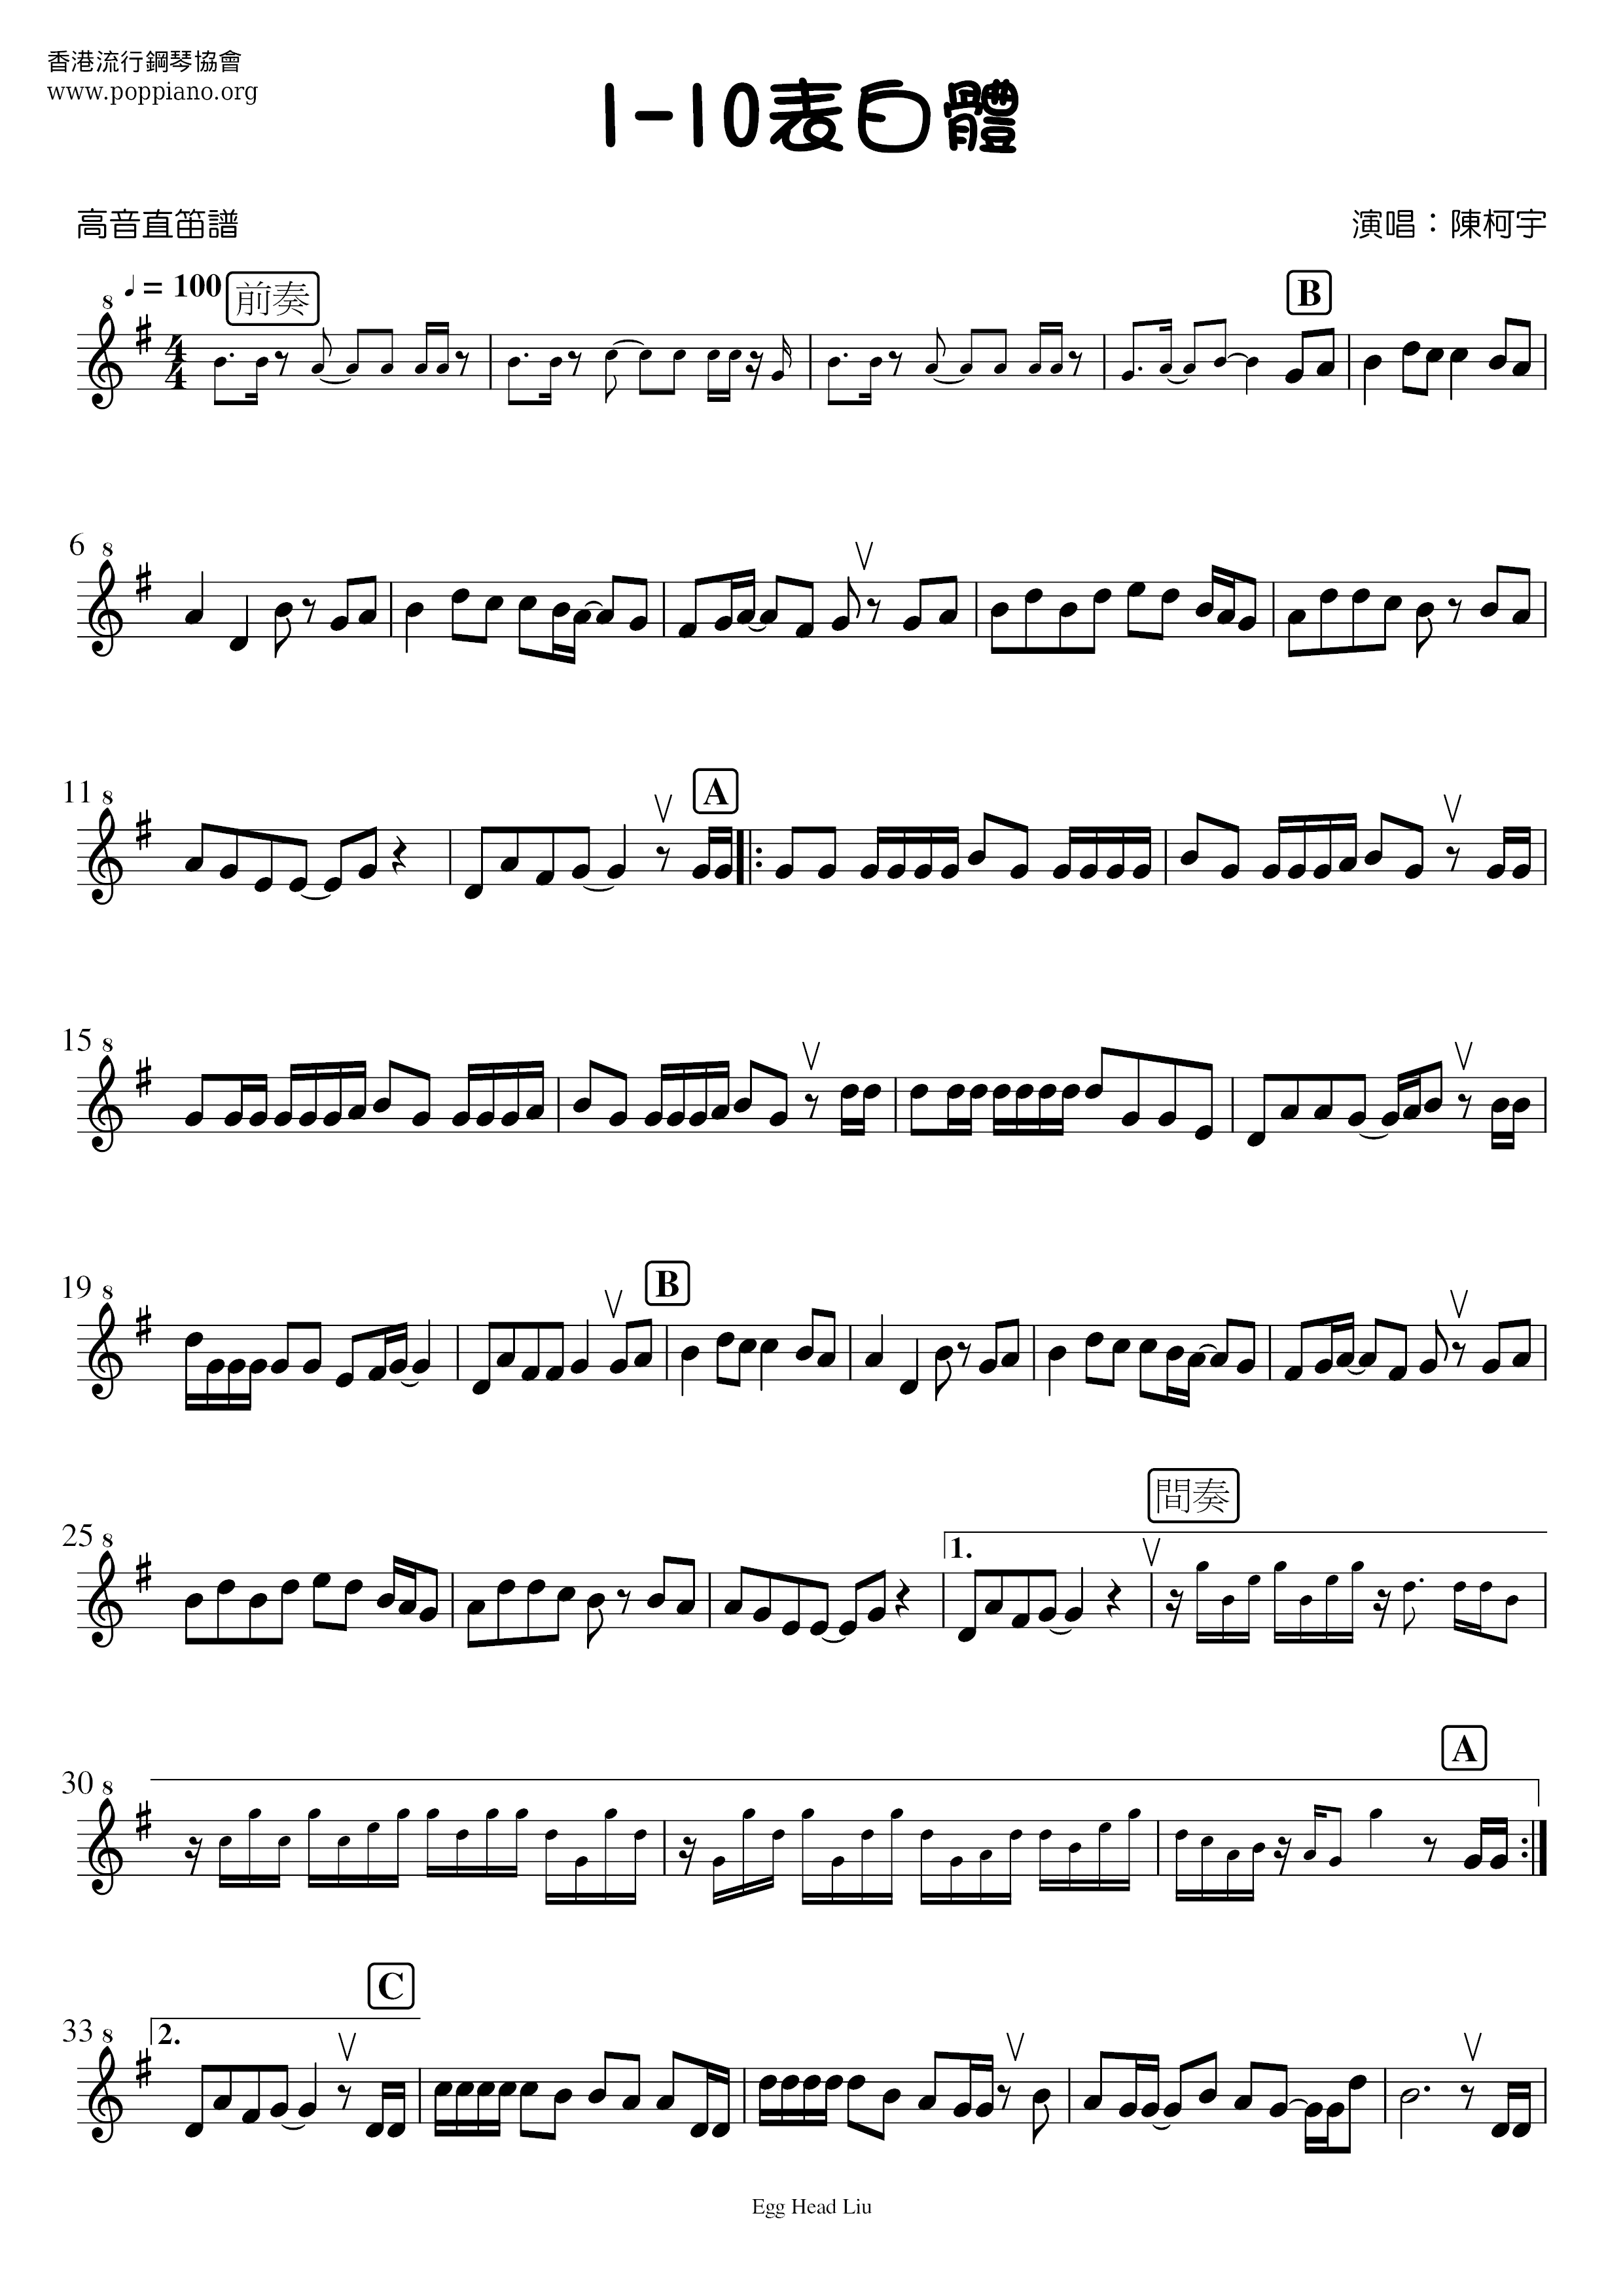 1-10表白體ピアノ譜